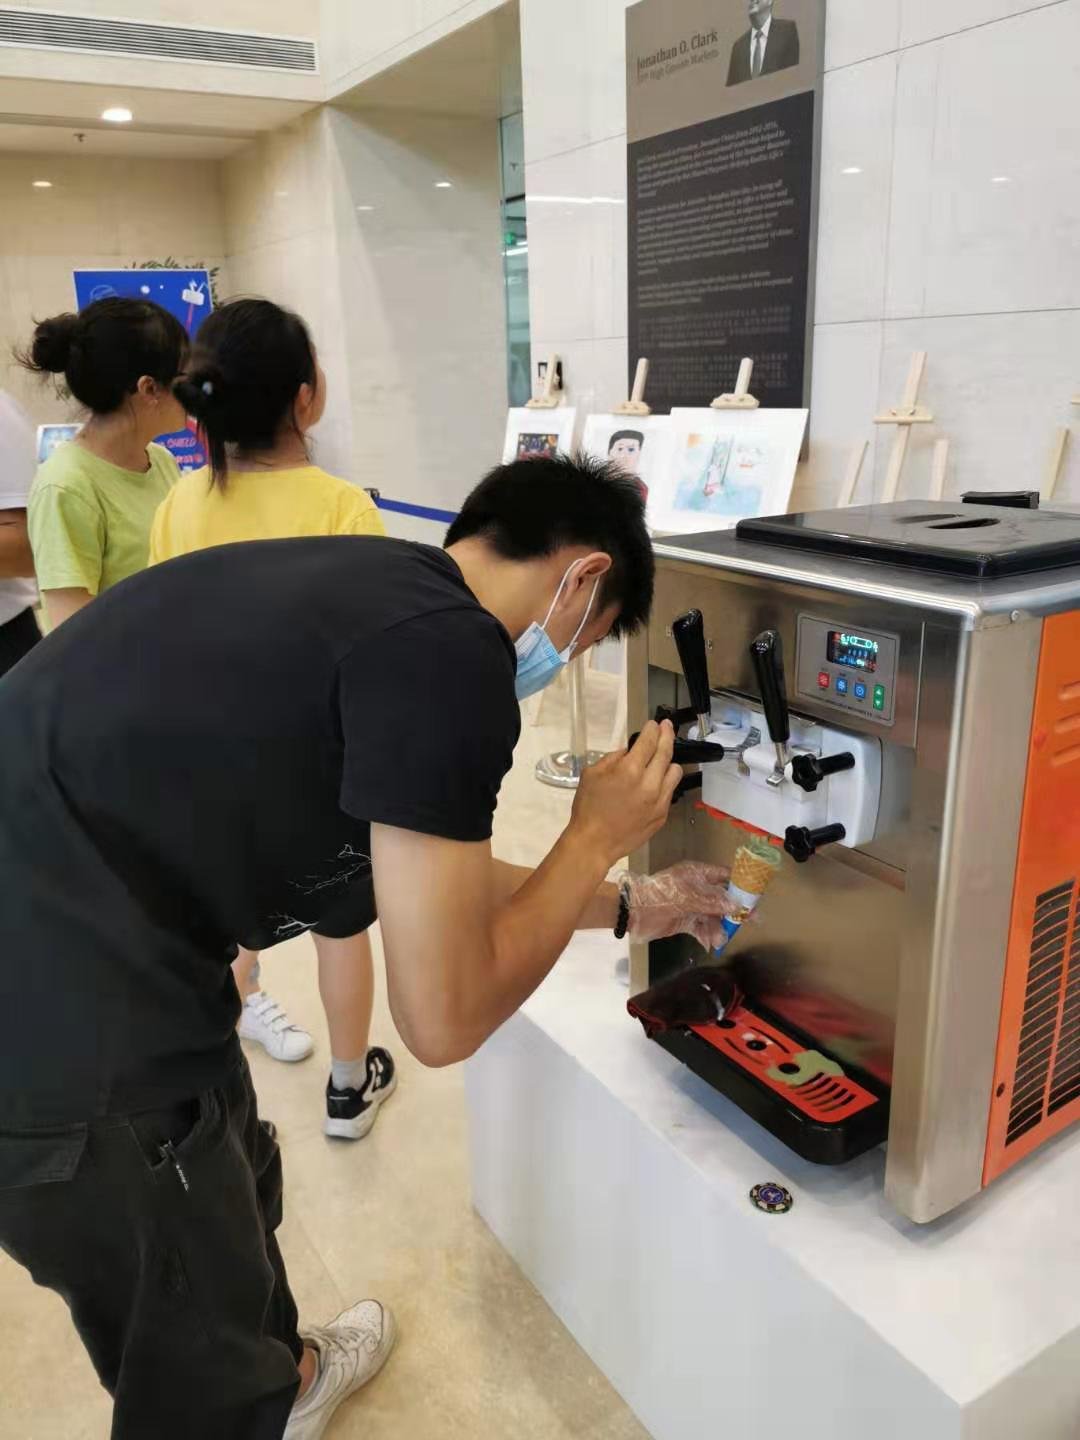 冰淇淋機出租 江浙滬地區提供冰淇淋機出租 4